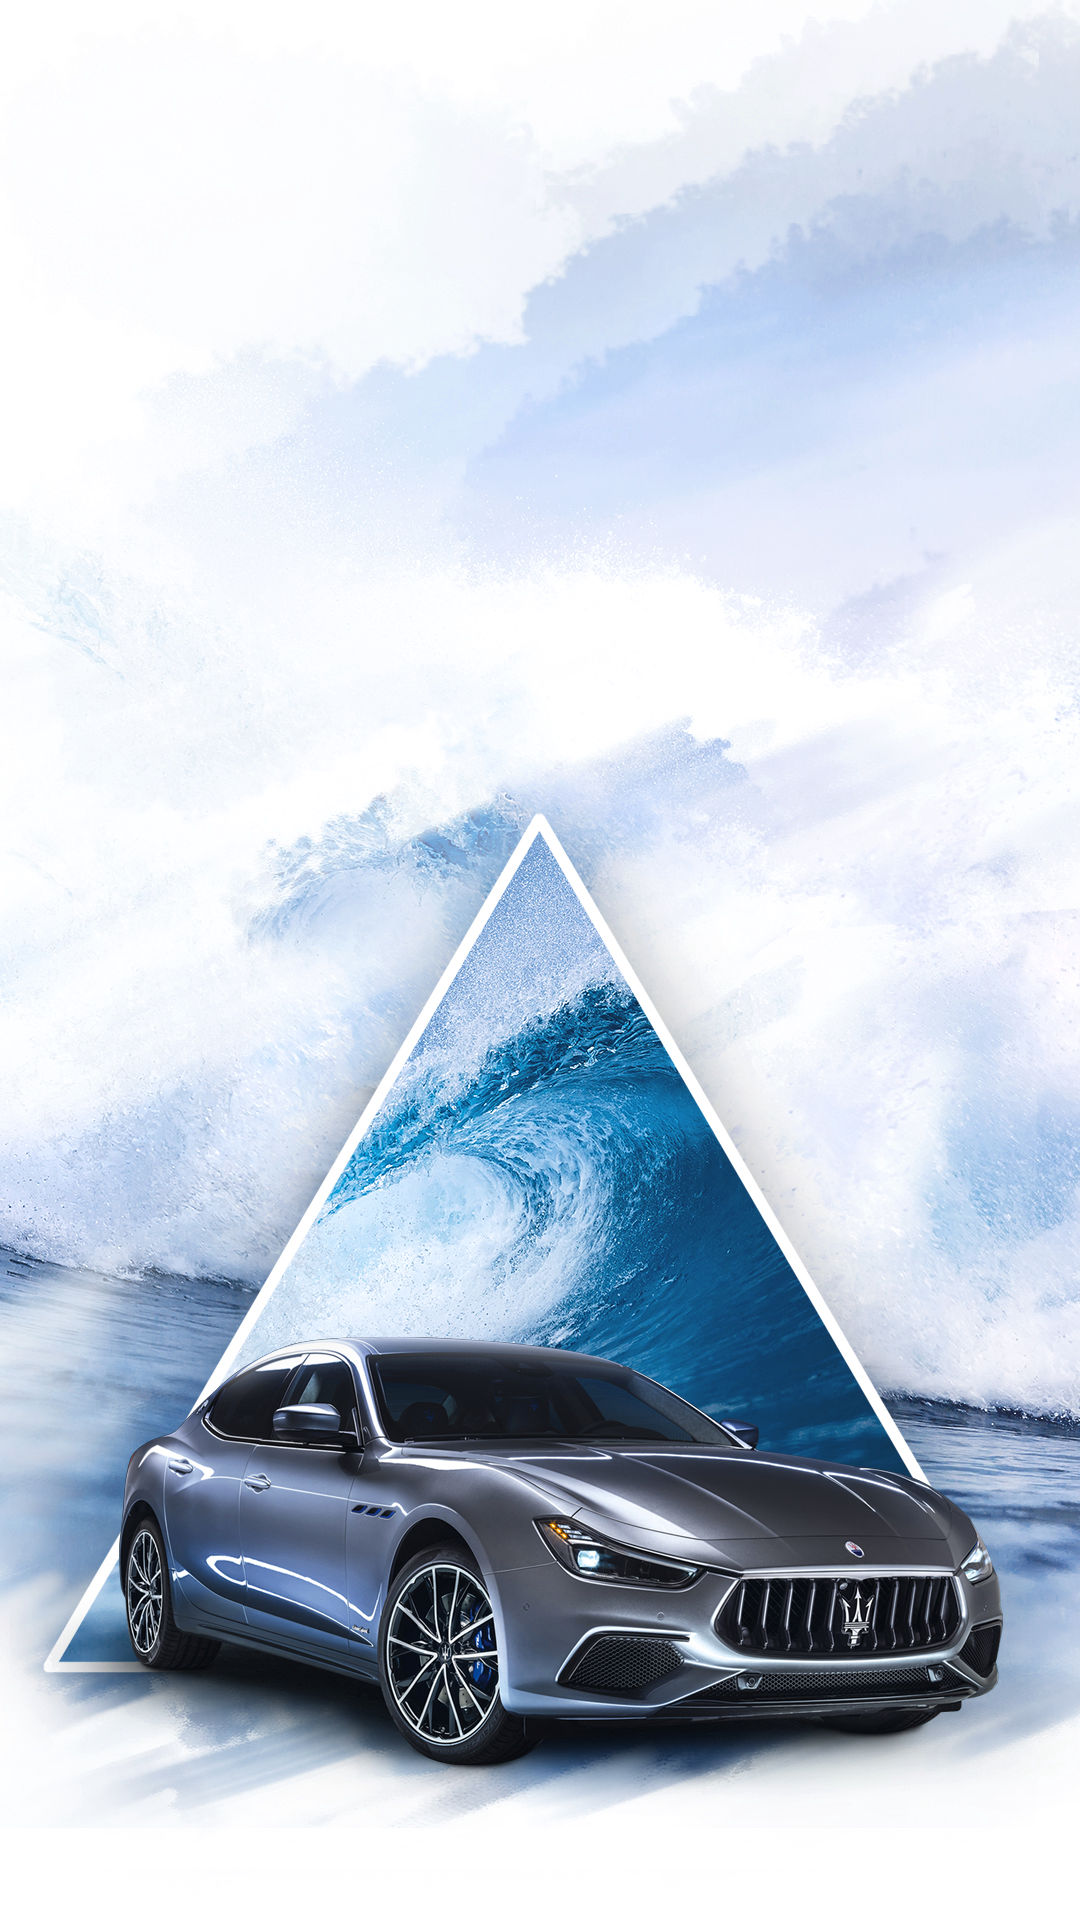 Maserati Ghibli auf dreieckigem Hintergrund mit Meer